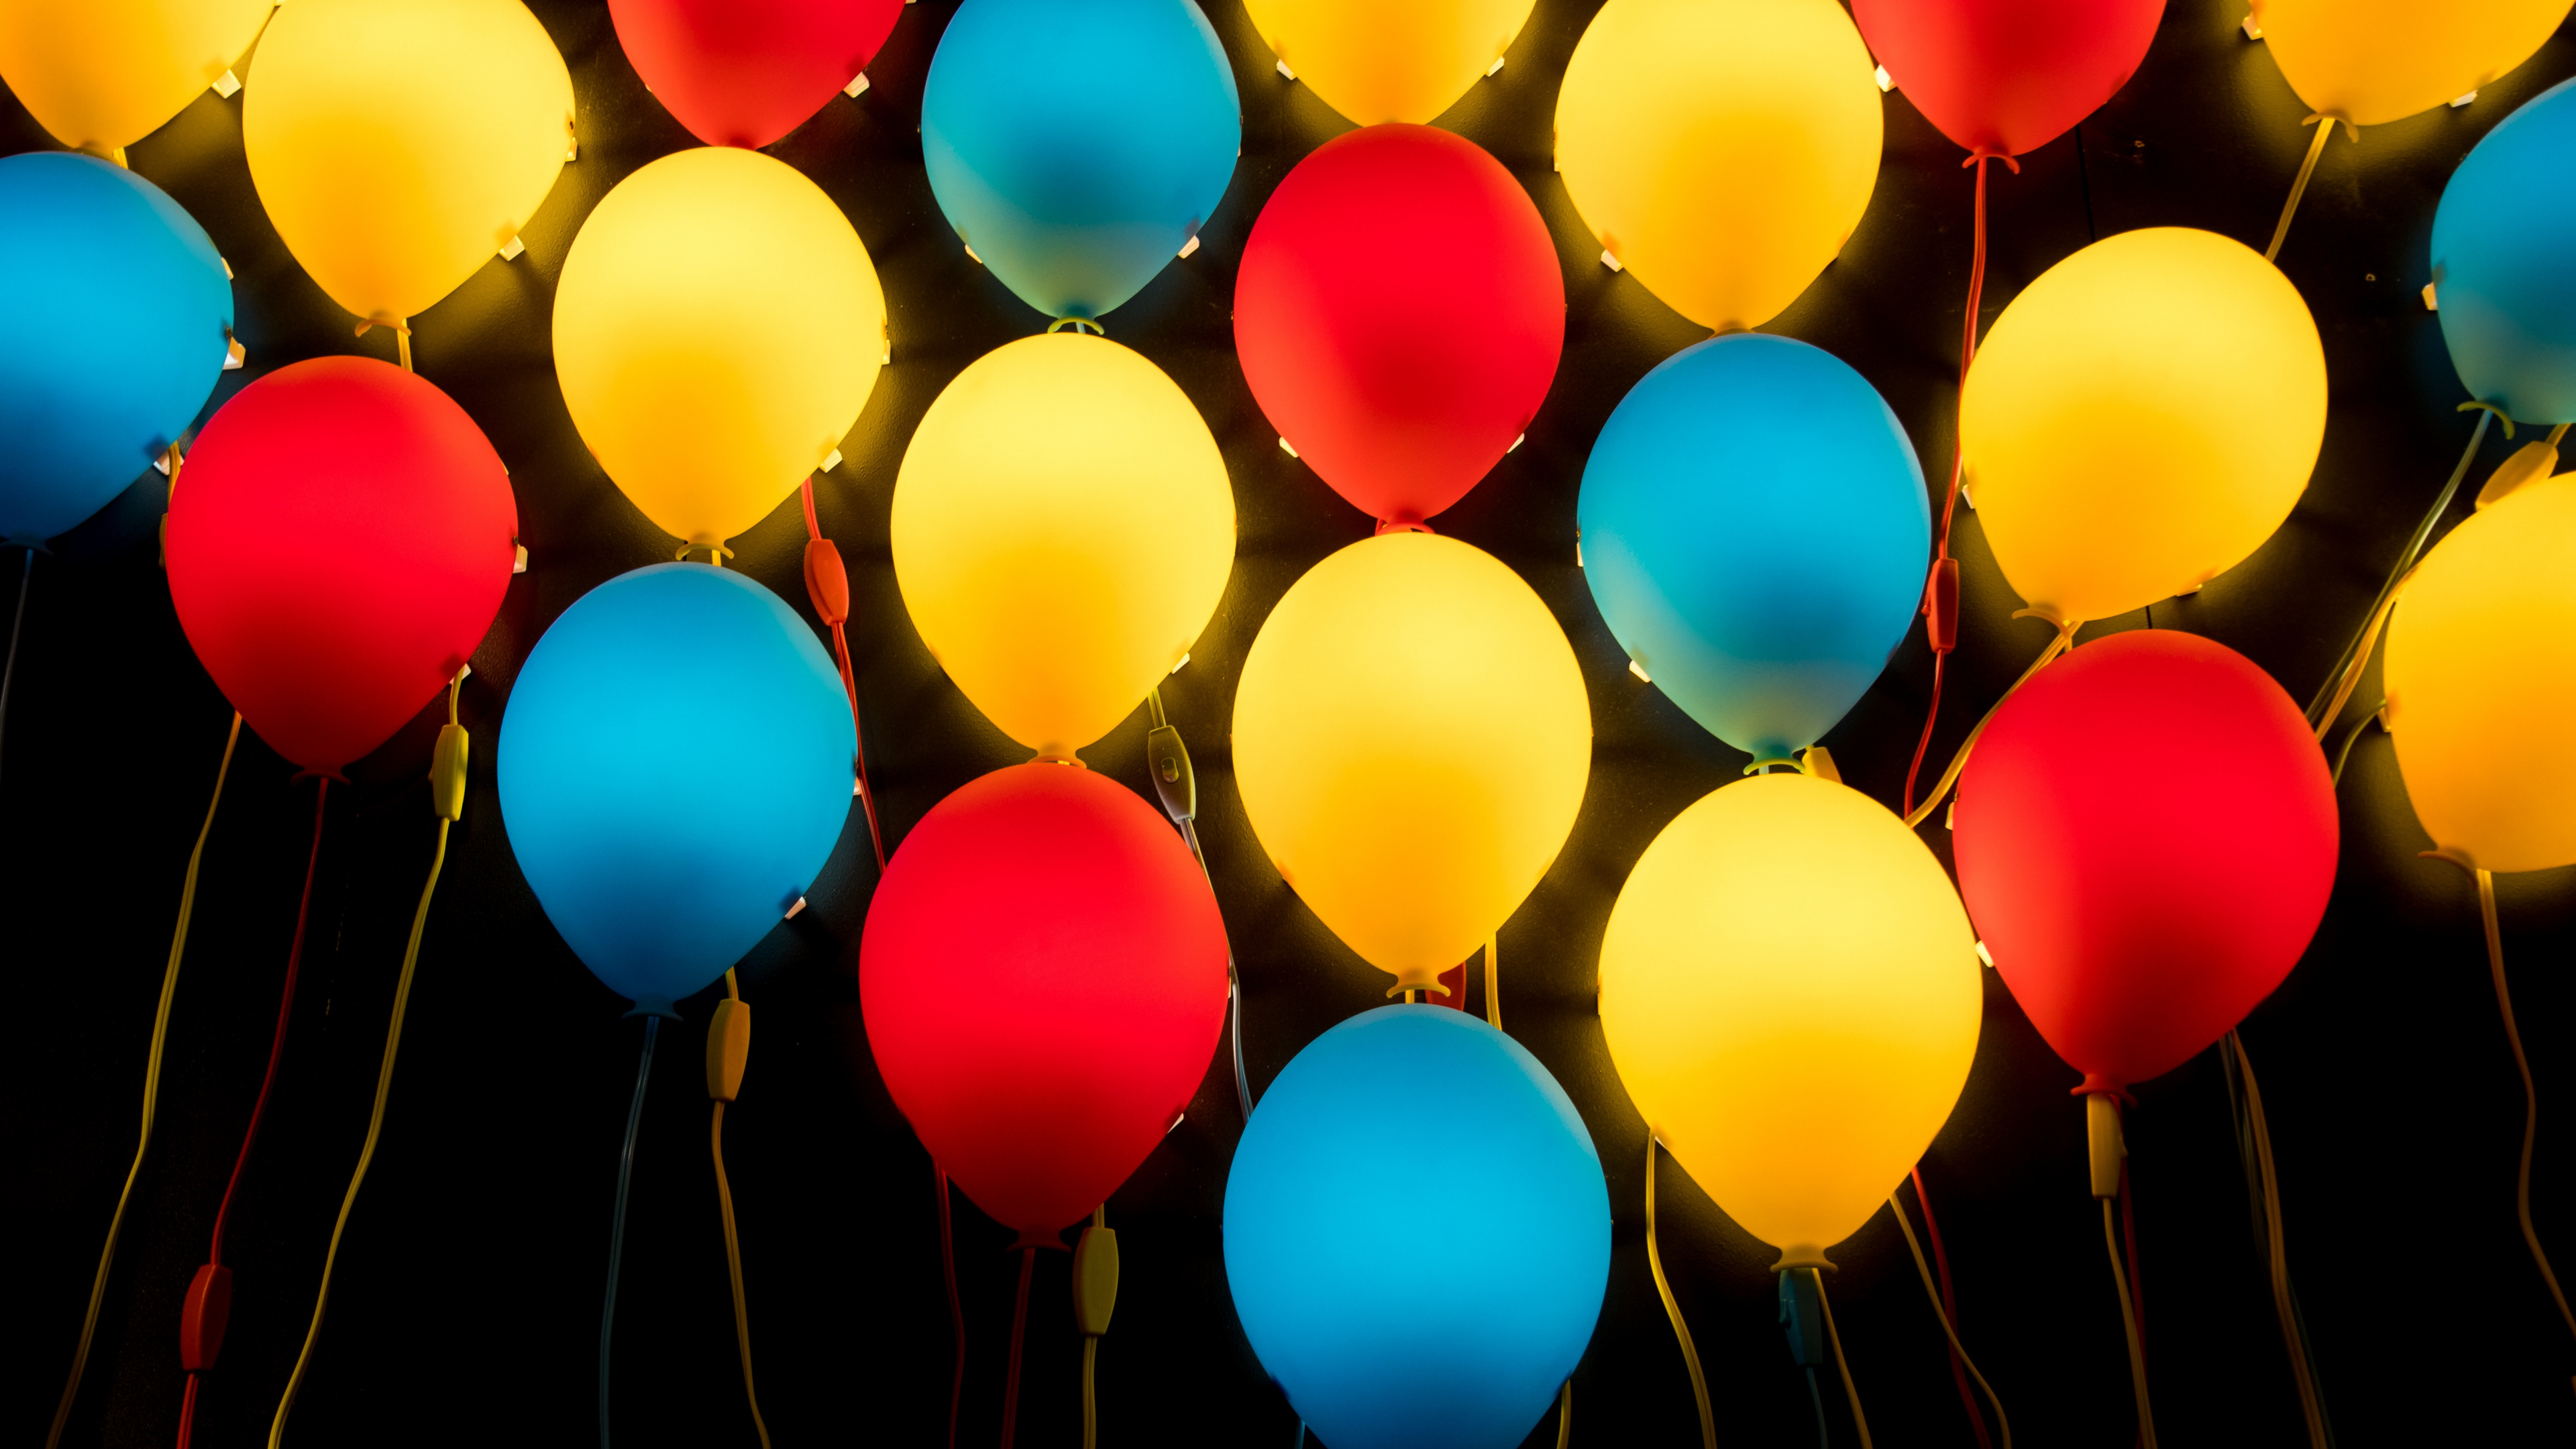 Gelbe Blaue Und Rote Luftballons. Wallpaper in 3840x2160 Resolution